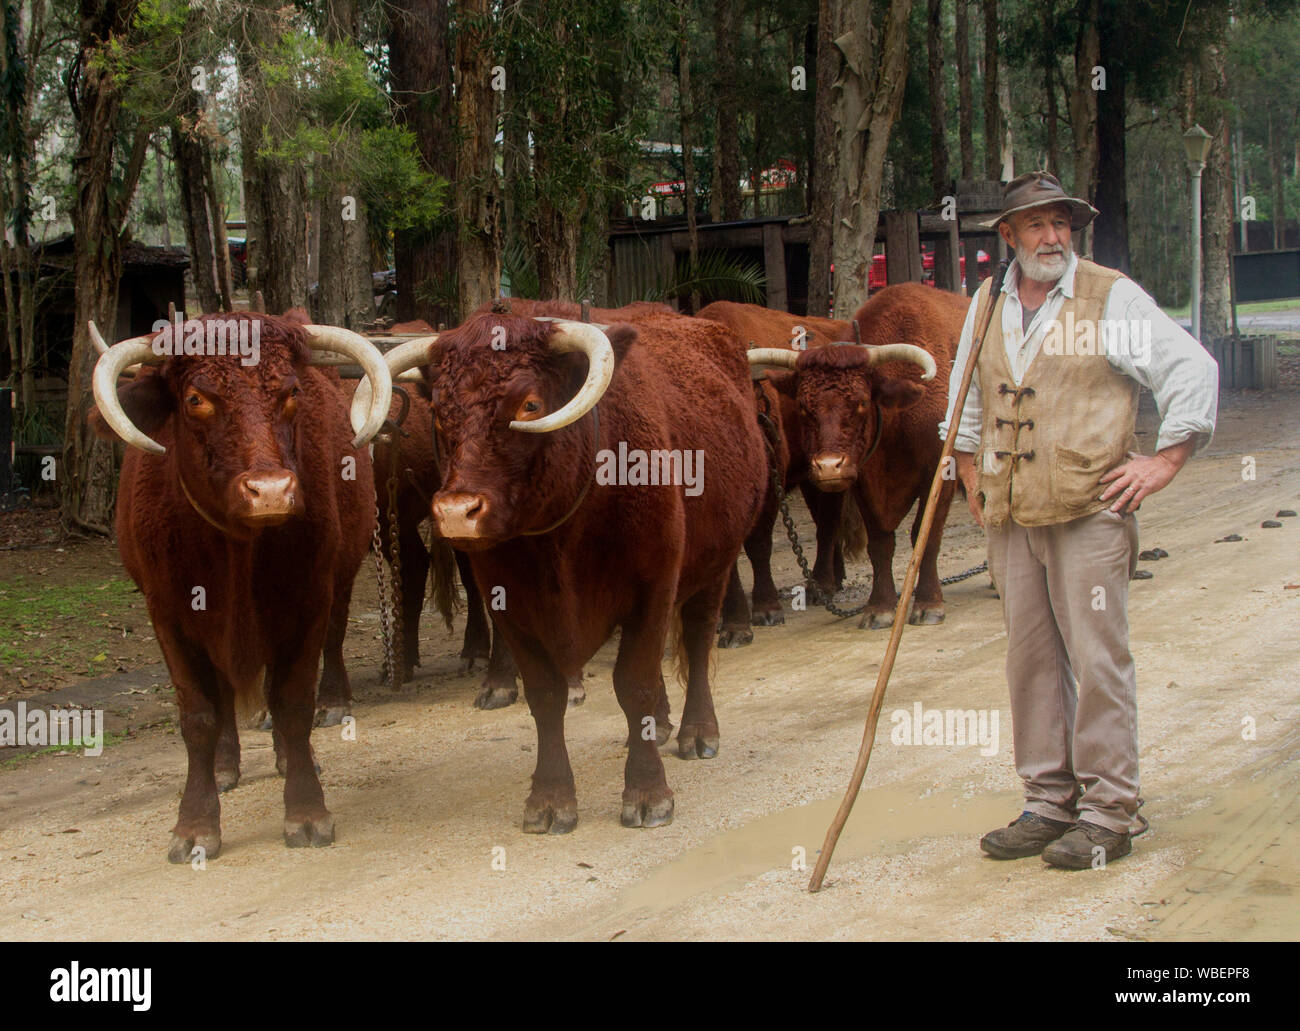 Un homme âgé, bullock chauffeur / bullocky, avec l'équipe de travail de taureaux une fois utilisé dans l'industrie forestière - dans le NSW Australie Banque D'Images